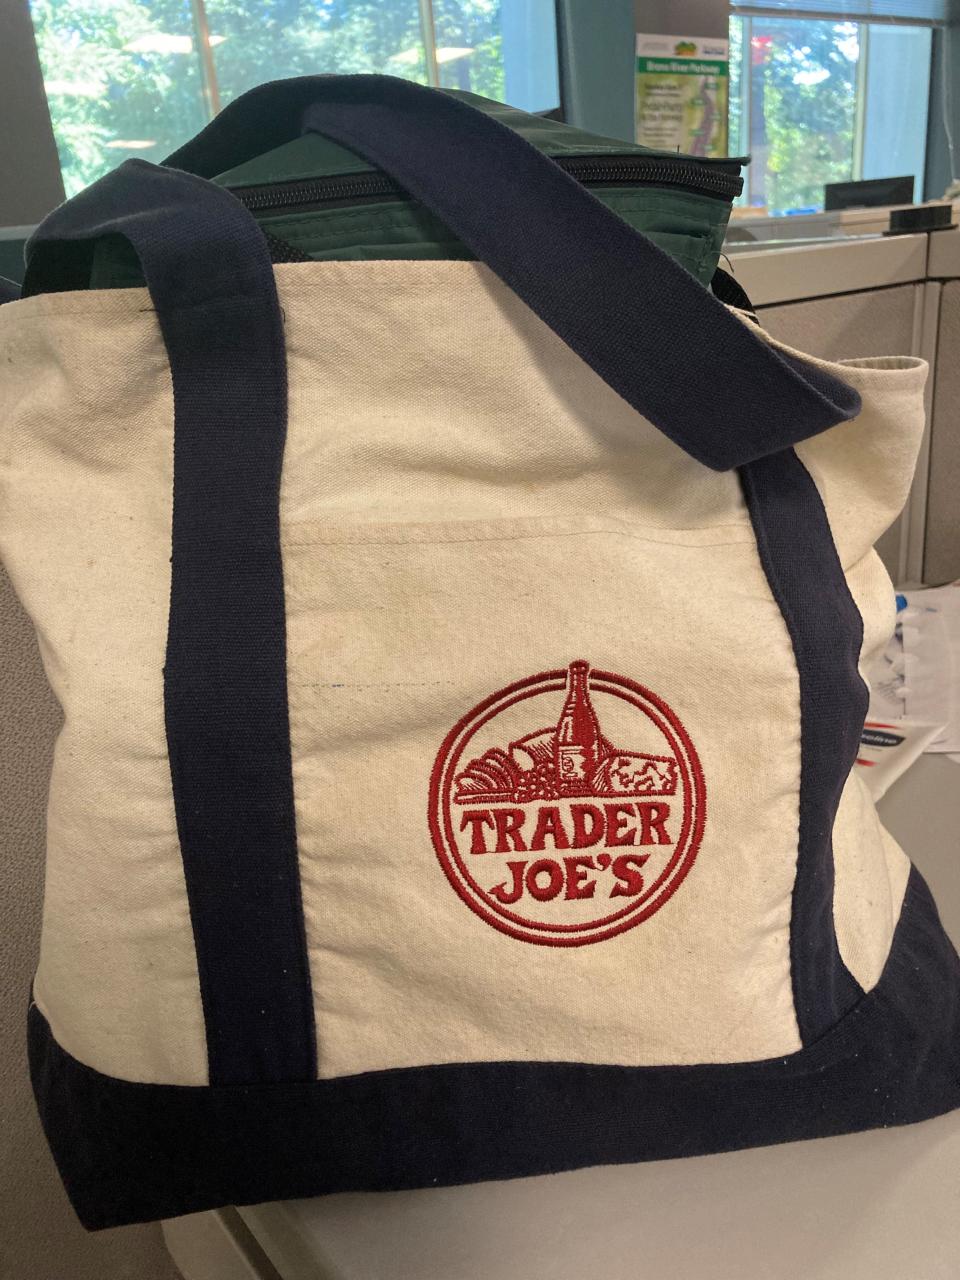 A Trader Joe's shopping bag.